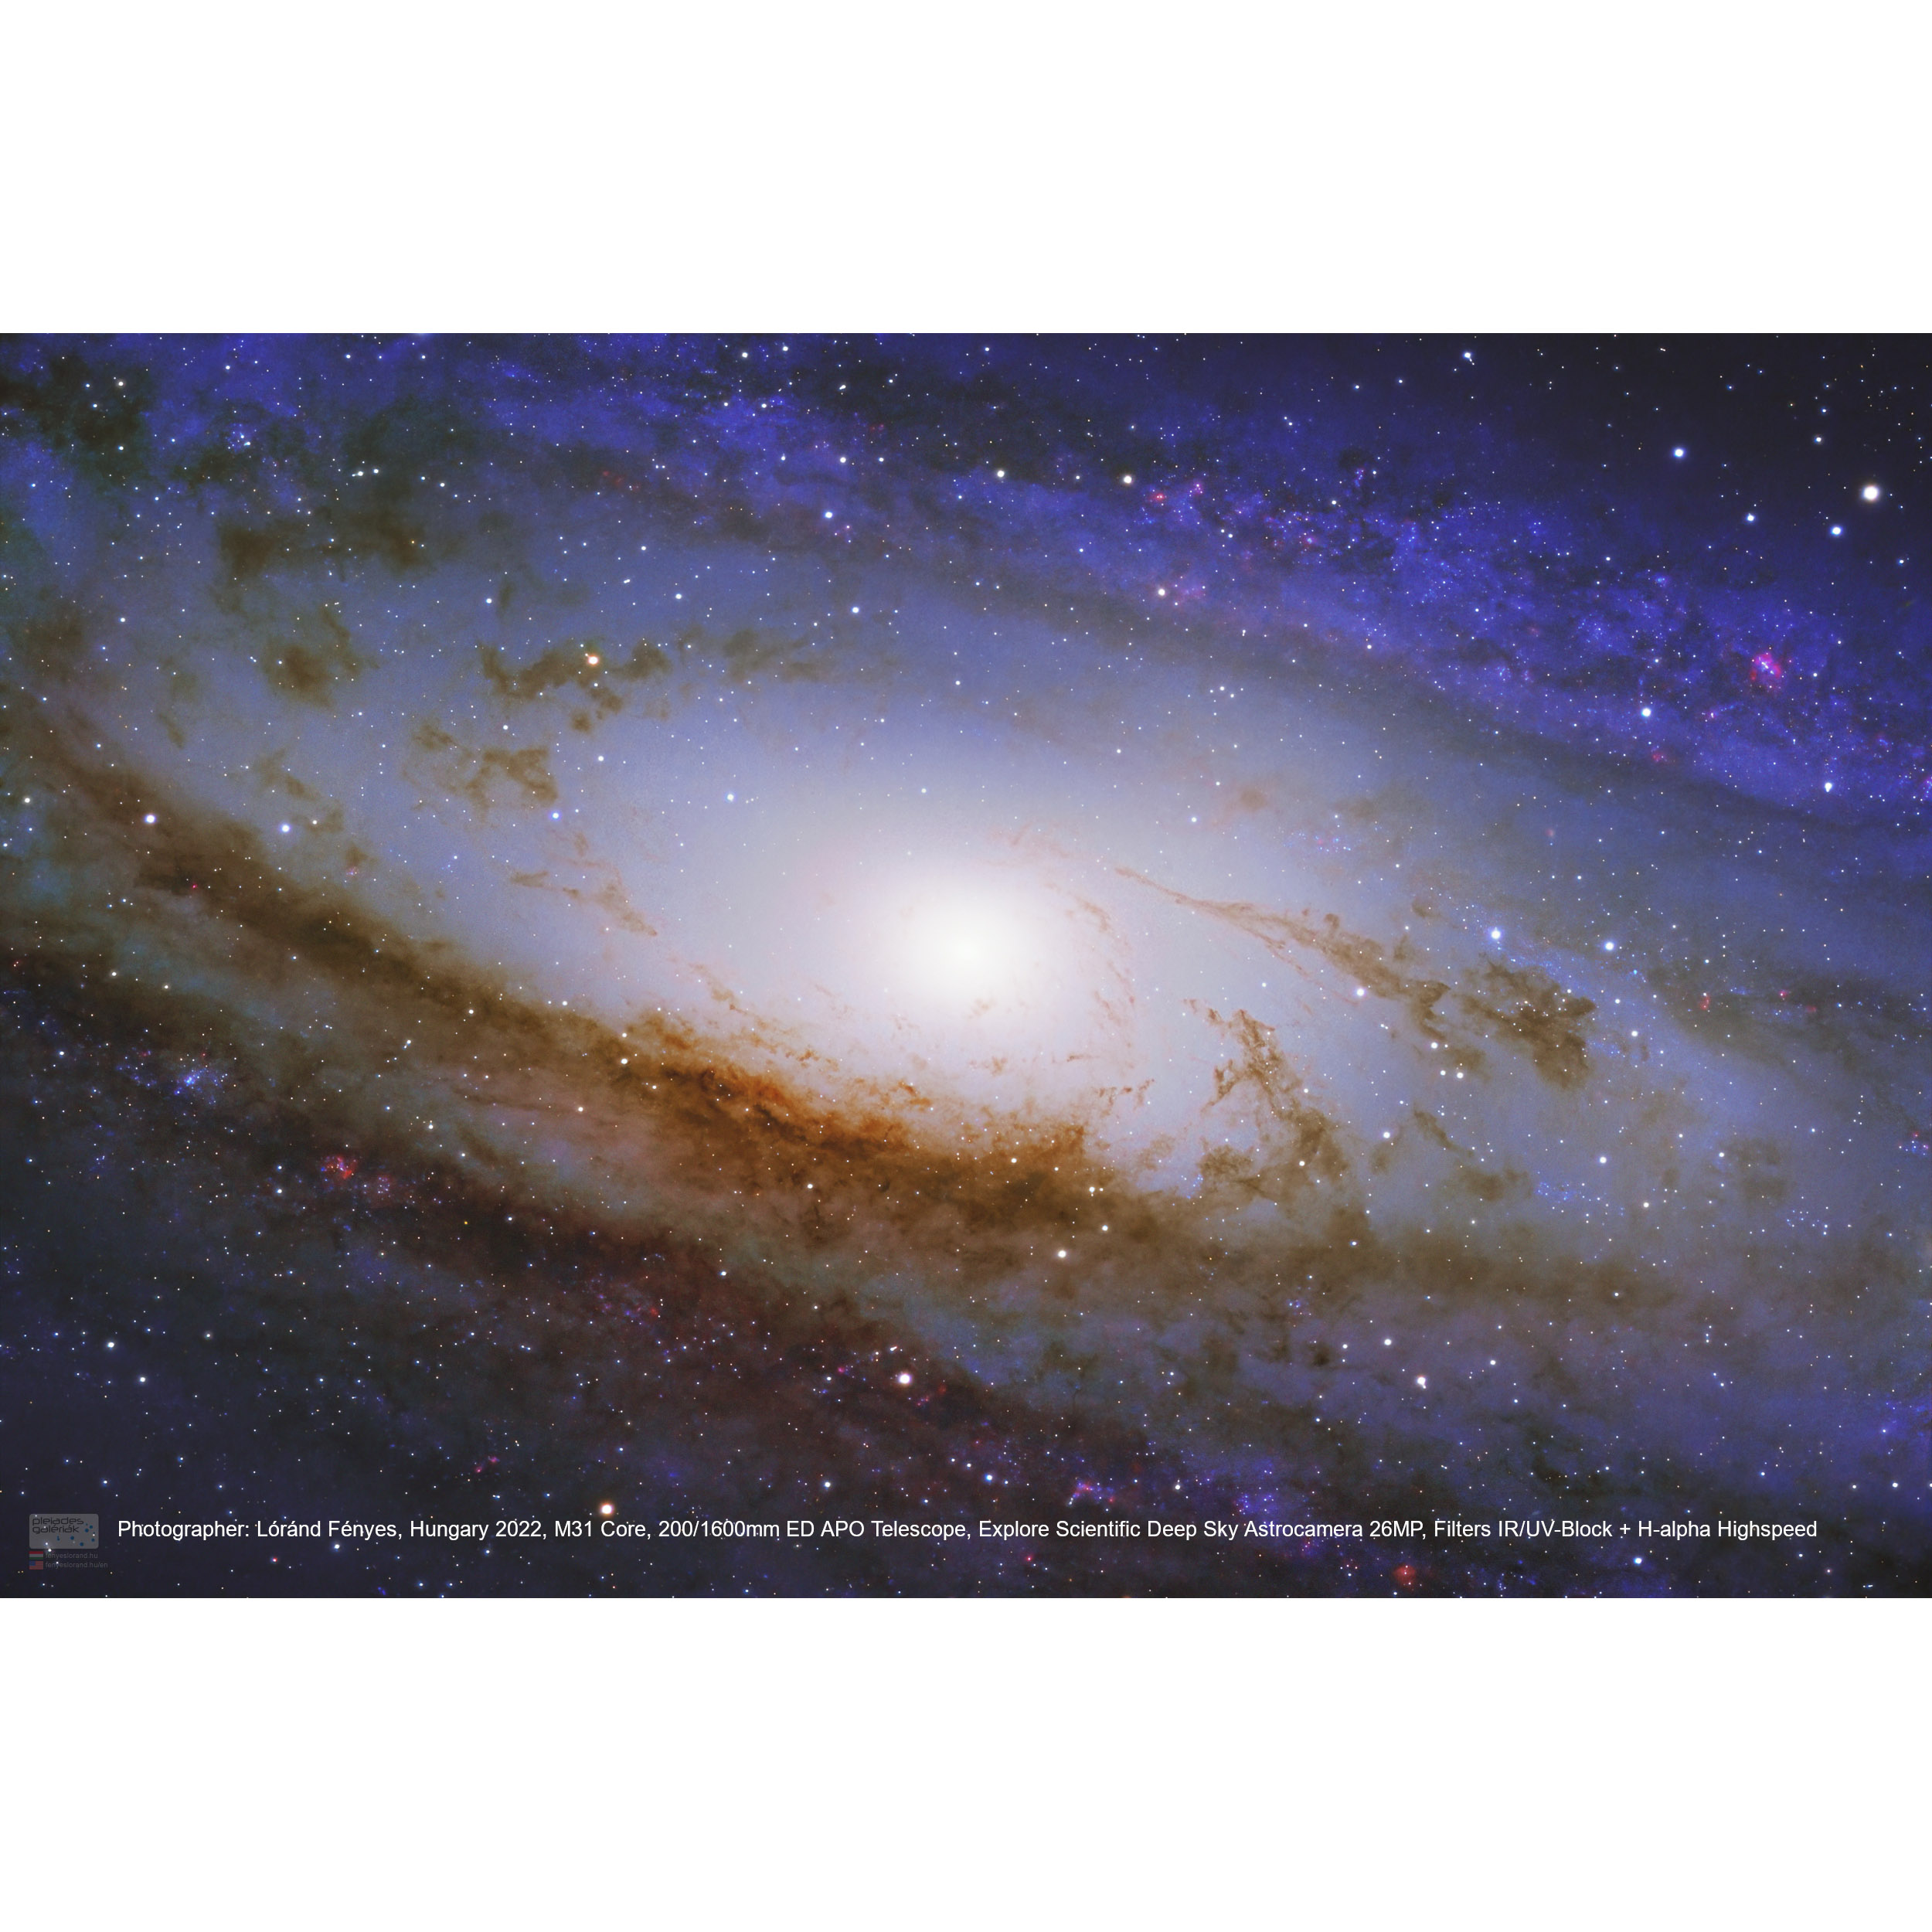 EXPLORE SCIENTIFIC Deep Sky Astro Camera 26MP 